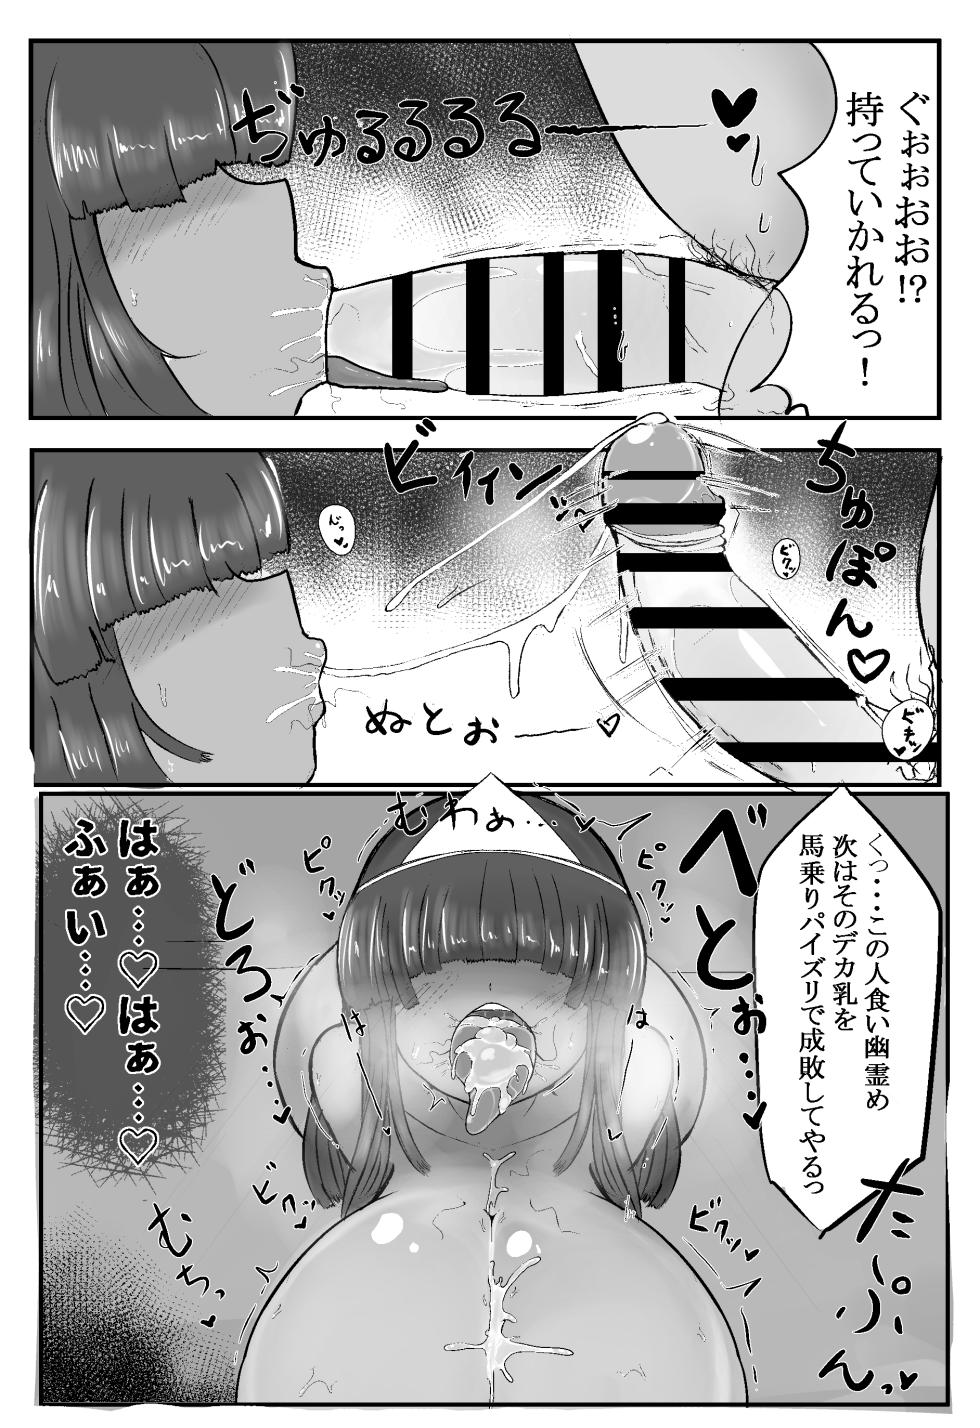 [yureruhiyayakko] exorcising ghosts - Page 11